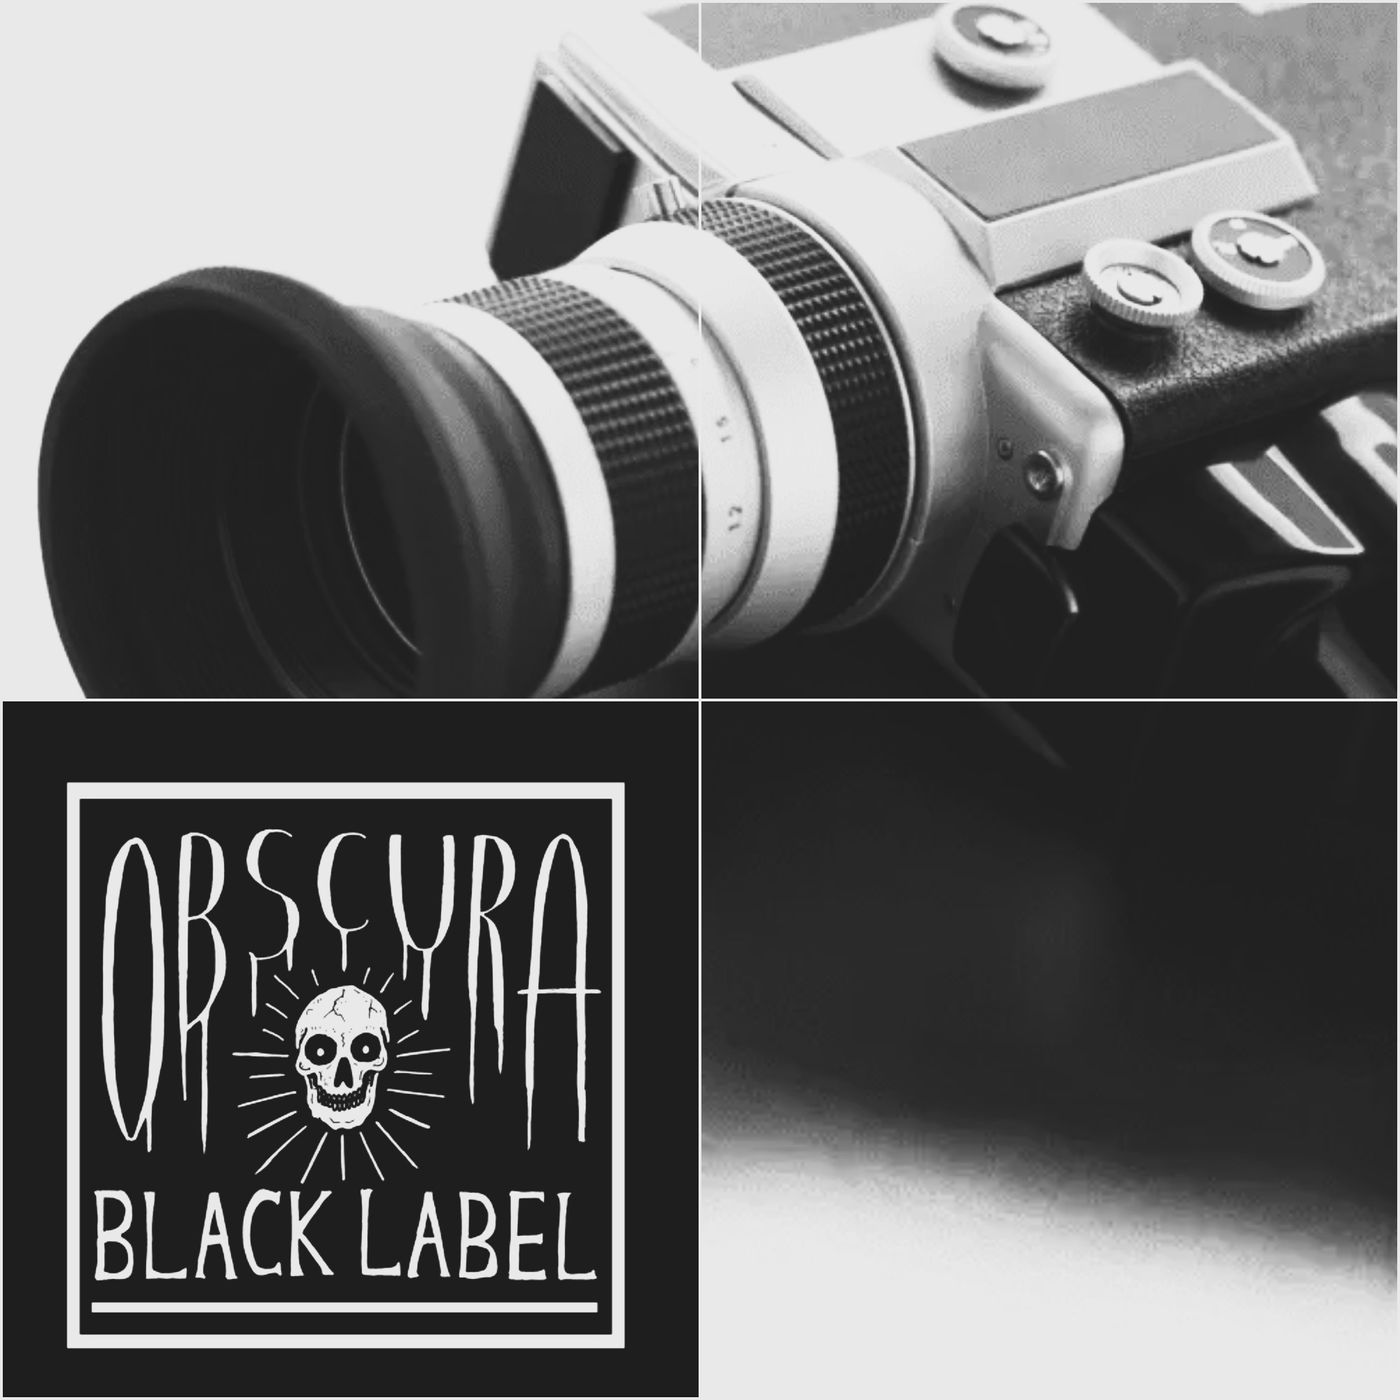 92: Black Label: In Living Color